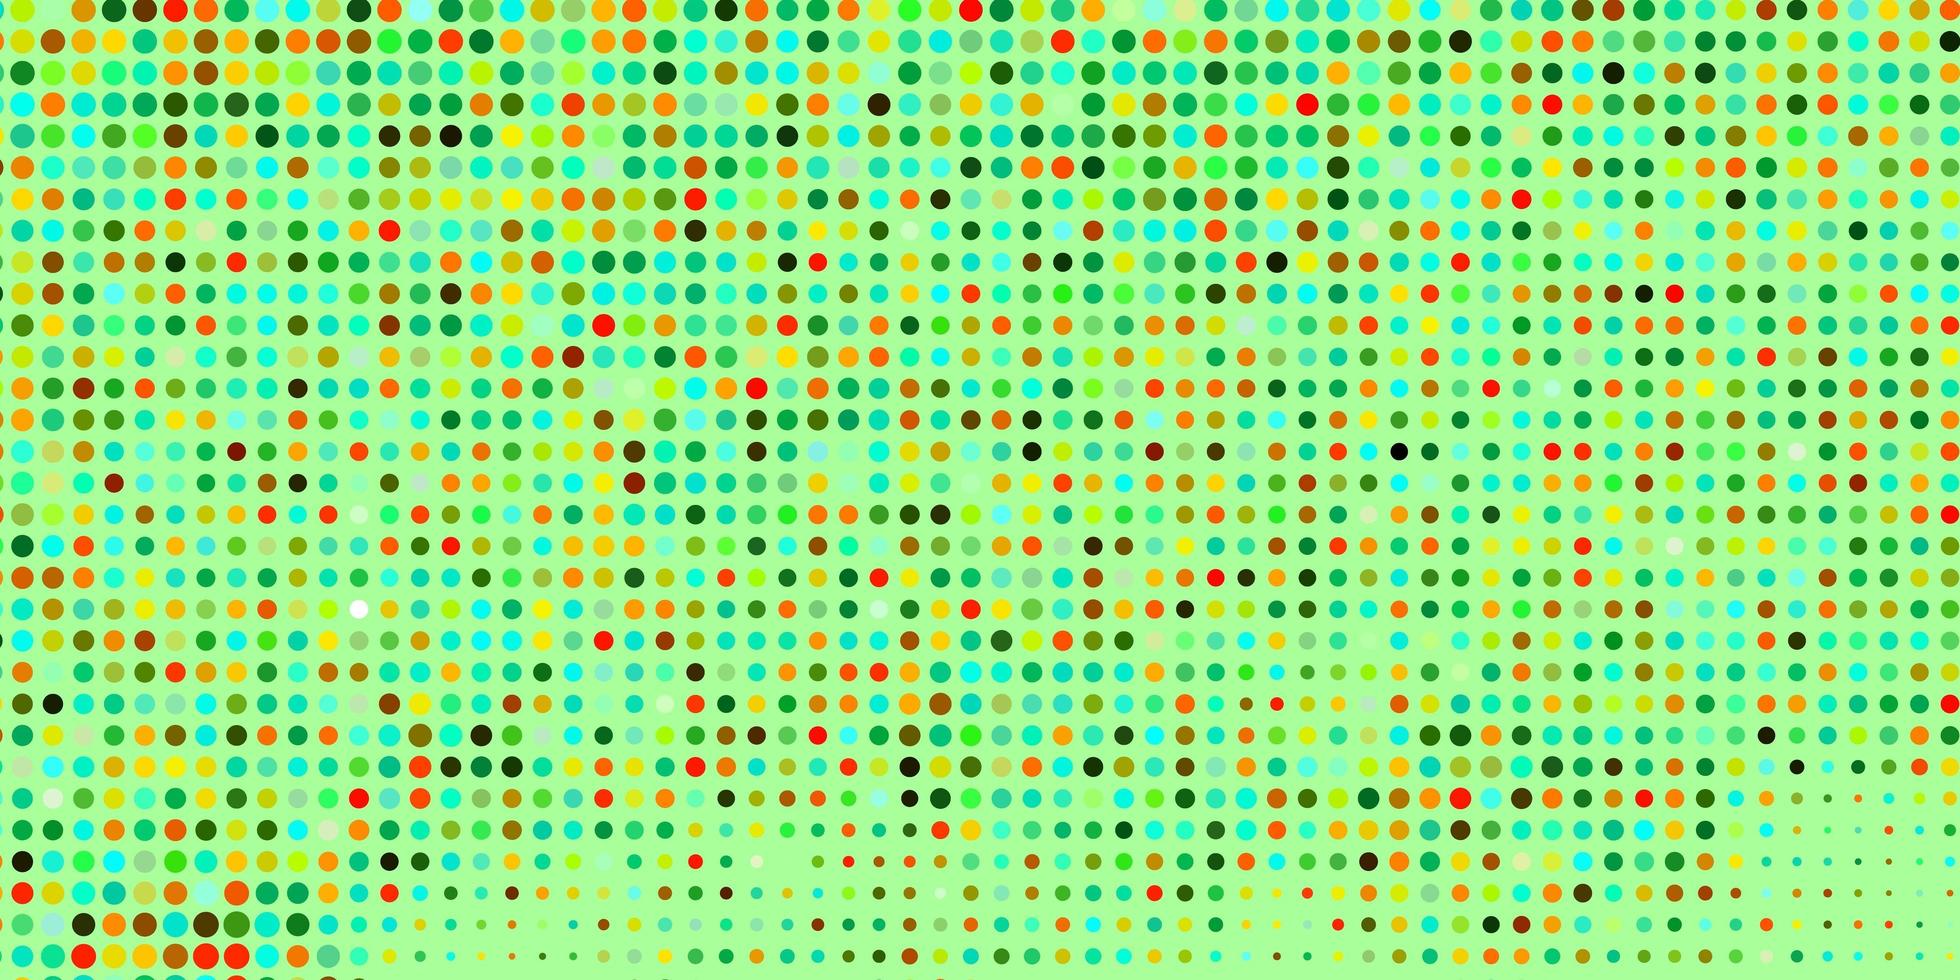 diseño de vector amarillo verde claro con formas de círculo ilustración abstracta con manchas de colores en el patrón de estilo de la naturaleza para anuncios comerciales